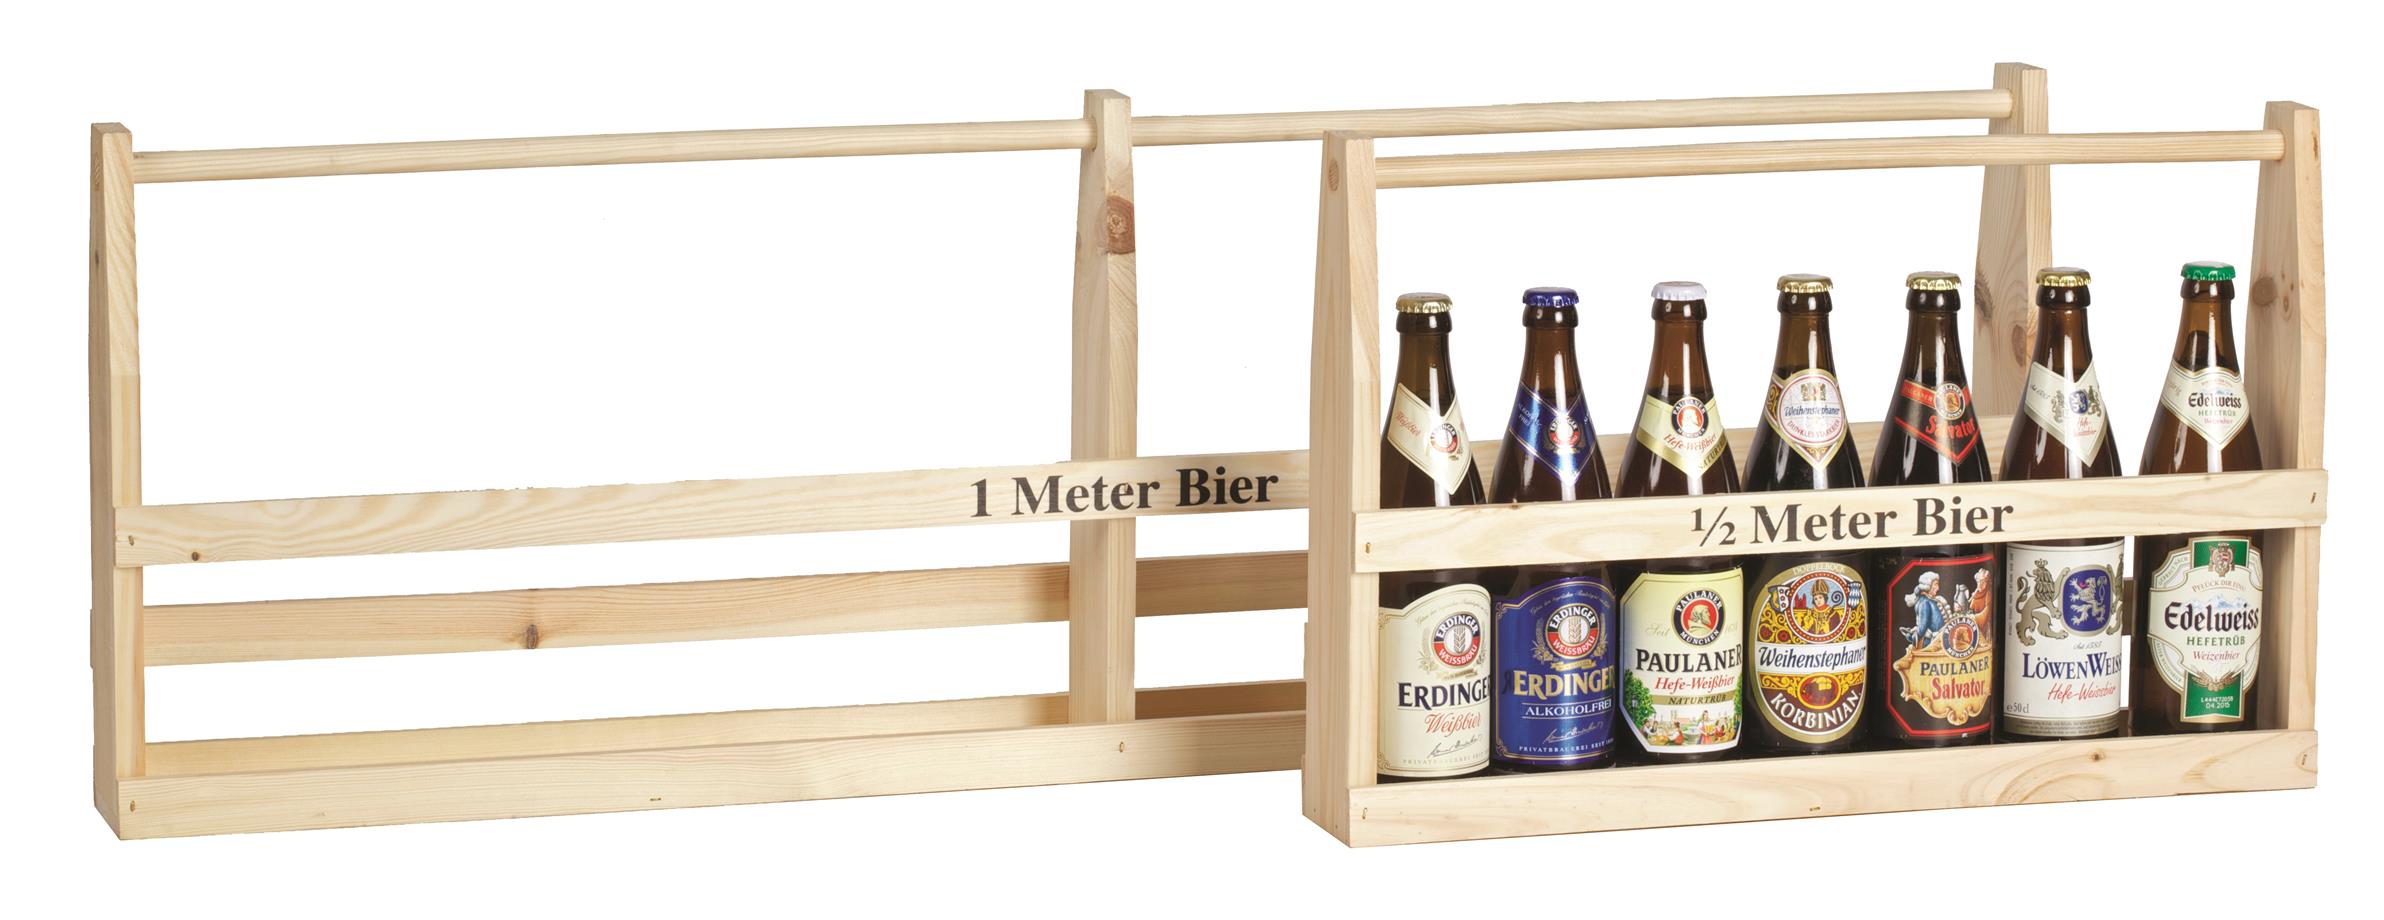 Afbeelding van Houten rek 1/2 meter bier voor 7 flesjes (0,50 ltr)